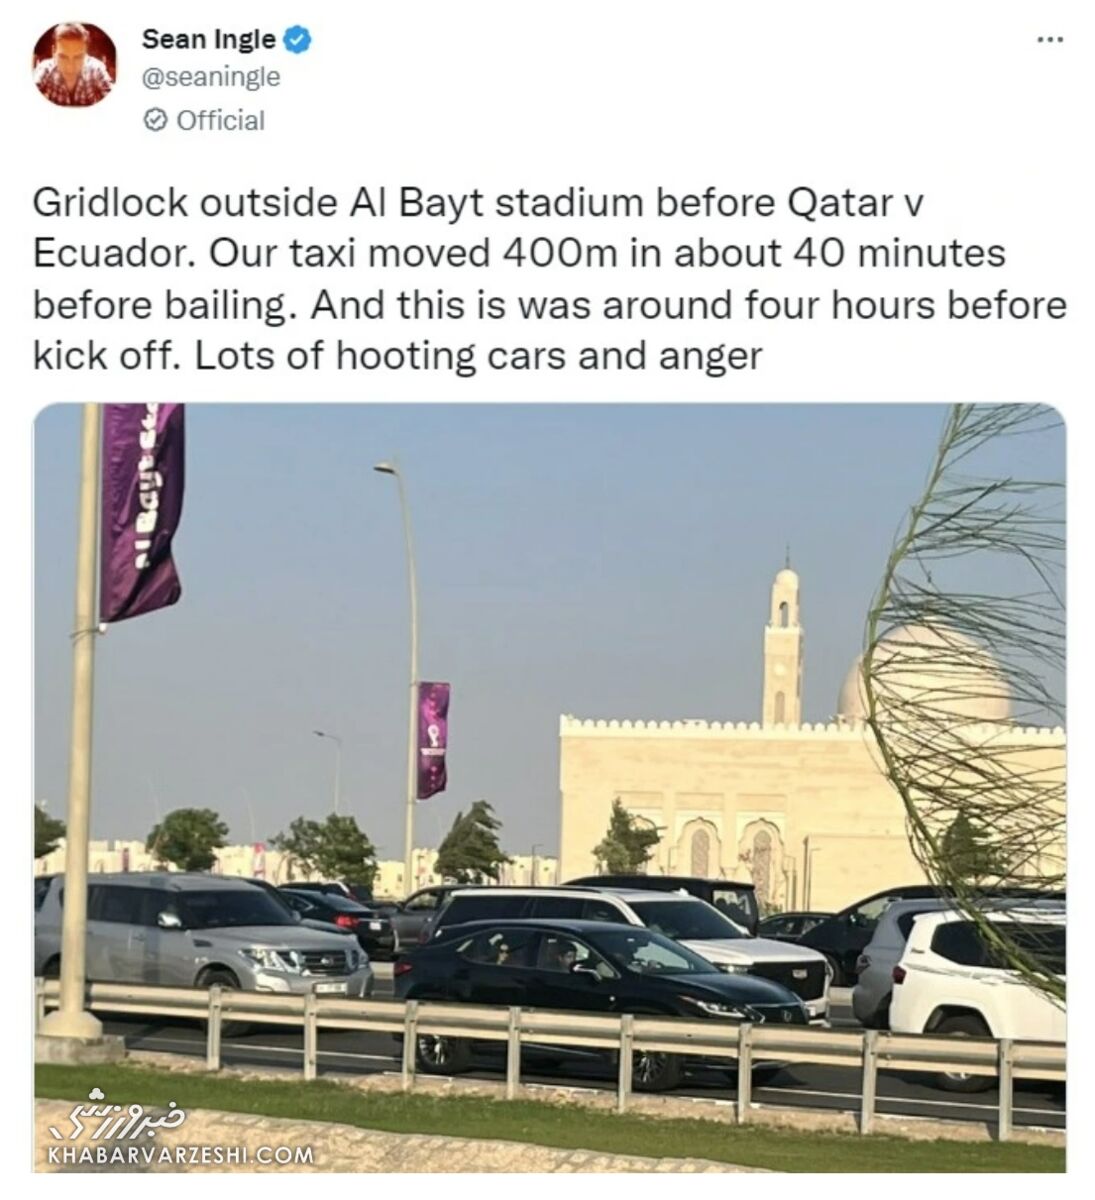 هرج و مرج در قطر/ تصویری که خبرنگار معروف از ترافیک شدید منتشر کرد